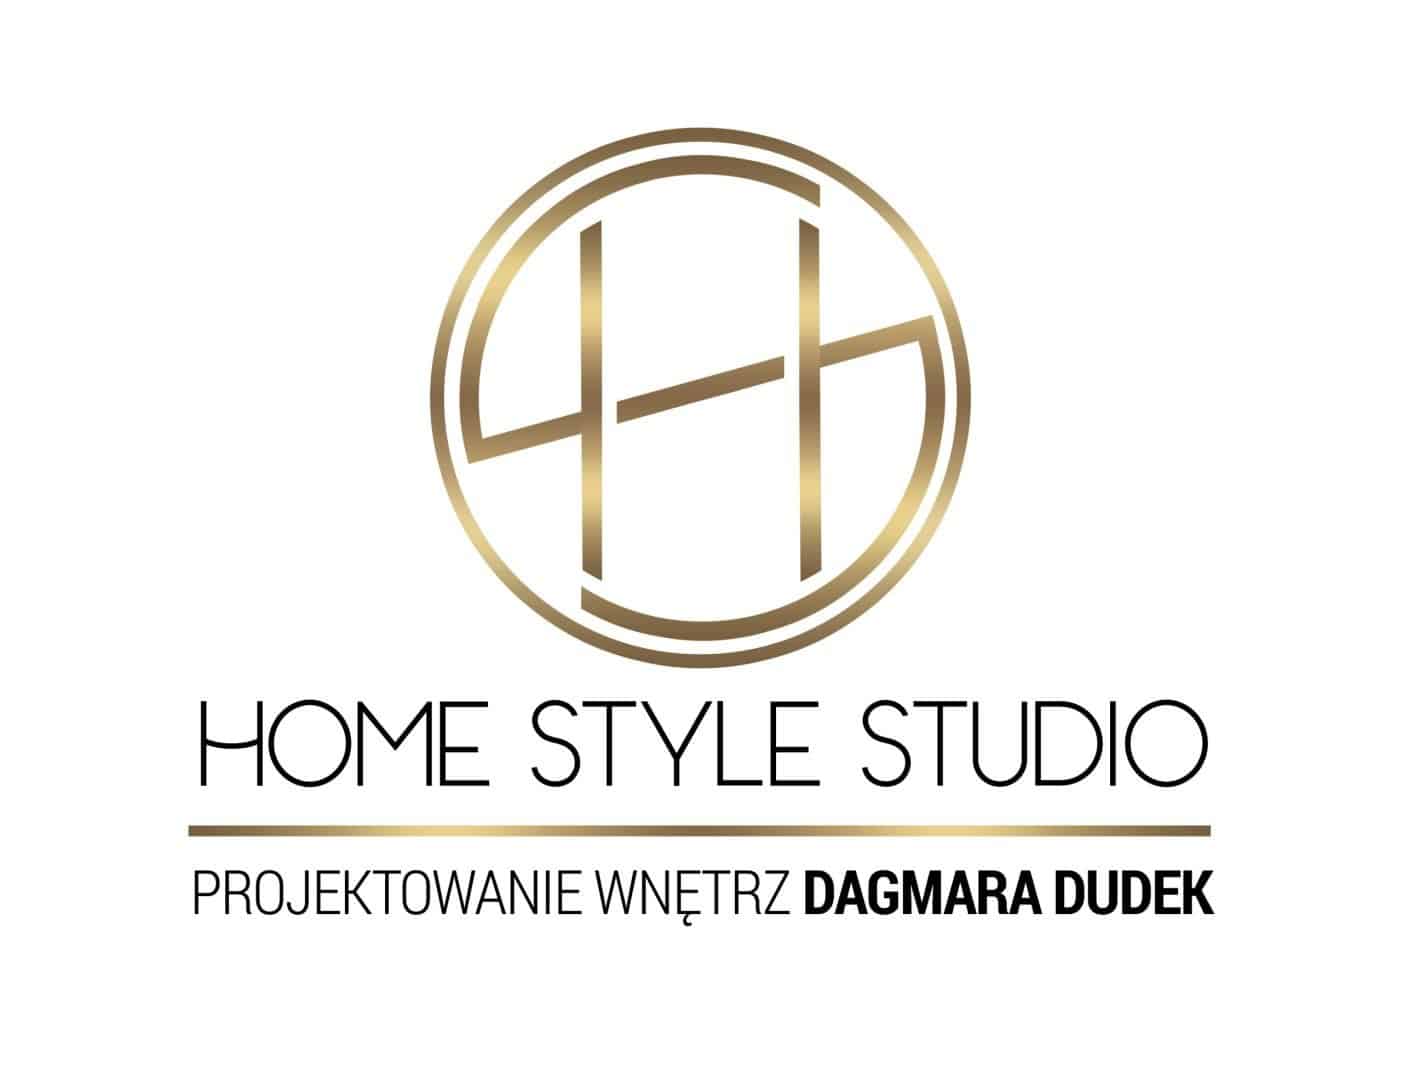 Home Style Studio